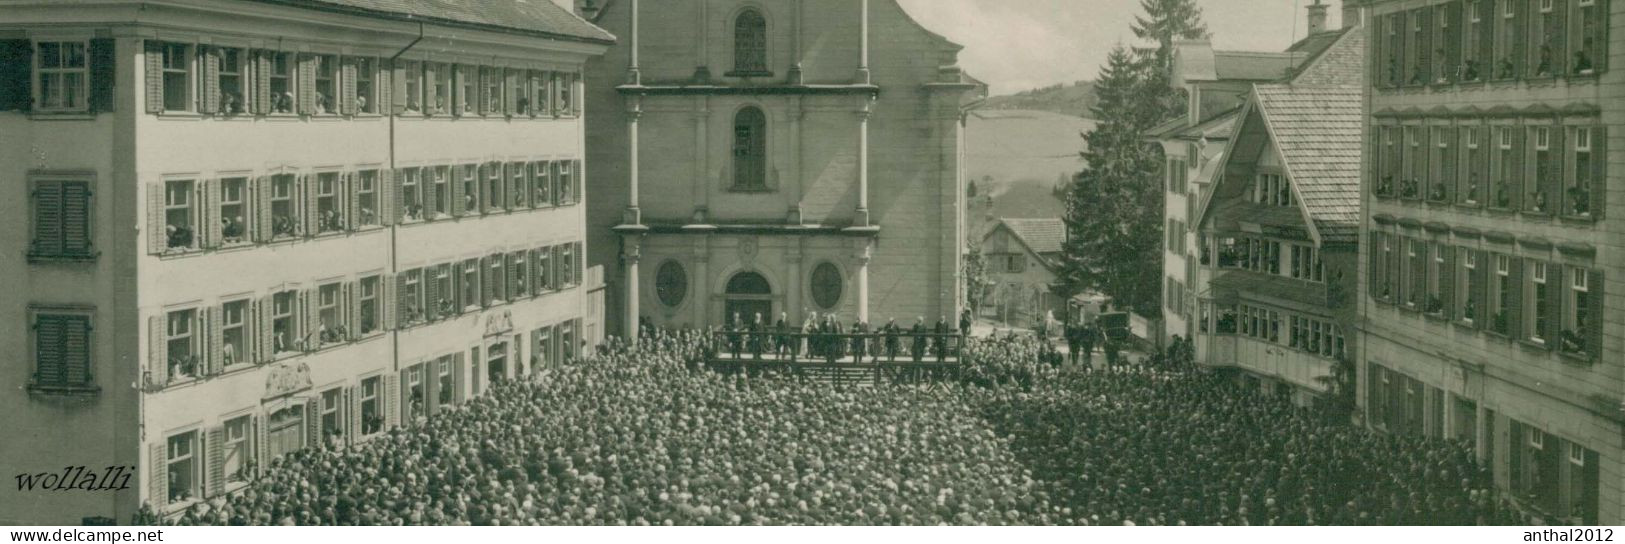 Rar 6301 Trogen Landsgemeinde Verlag Frei St. Gallen Um 1930 - Trogen